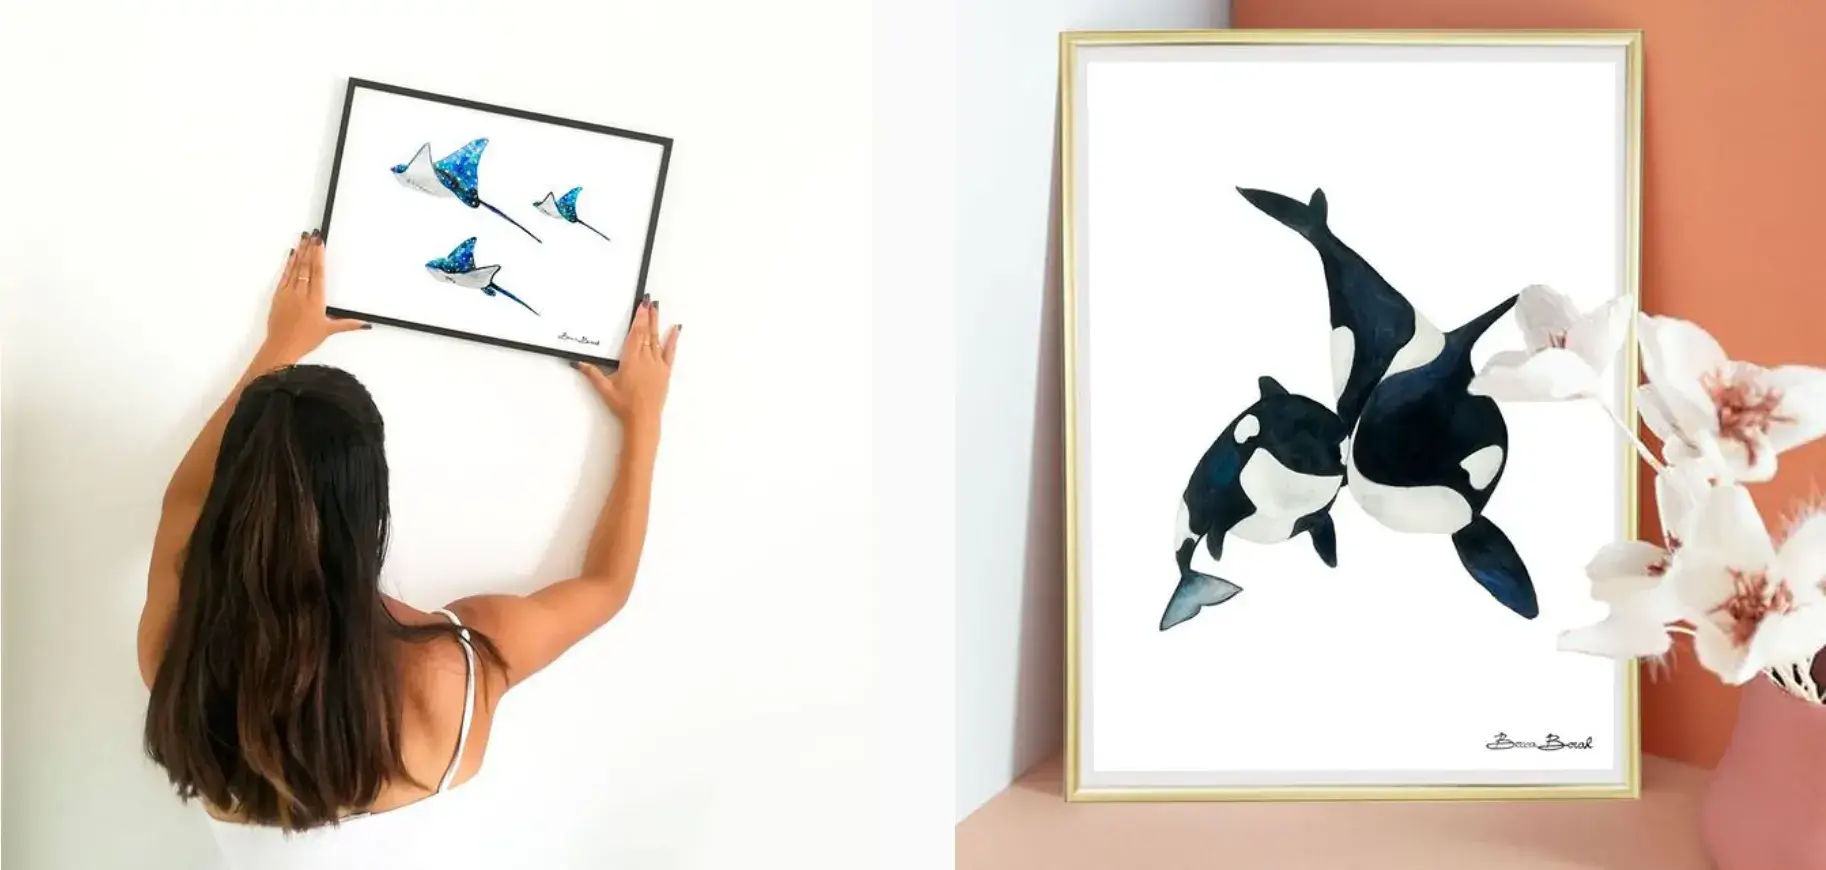 Becca Borah tenant une aquerelle avec des raie et une autre aquarelle avec deux orques